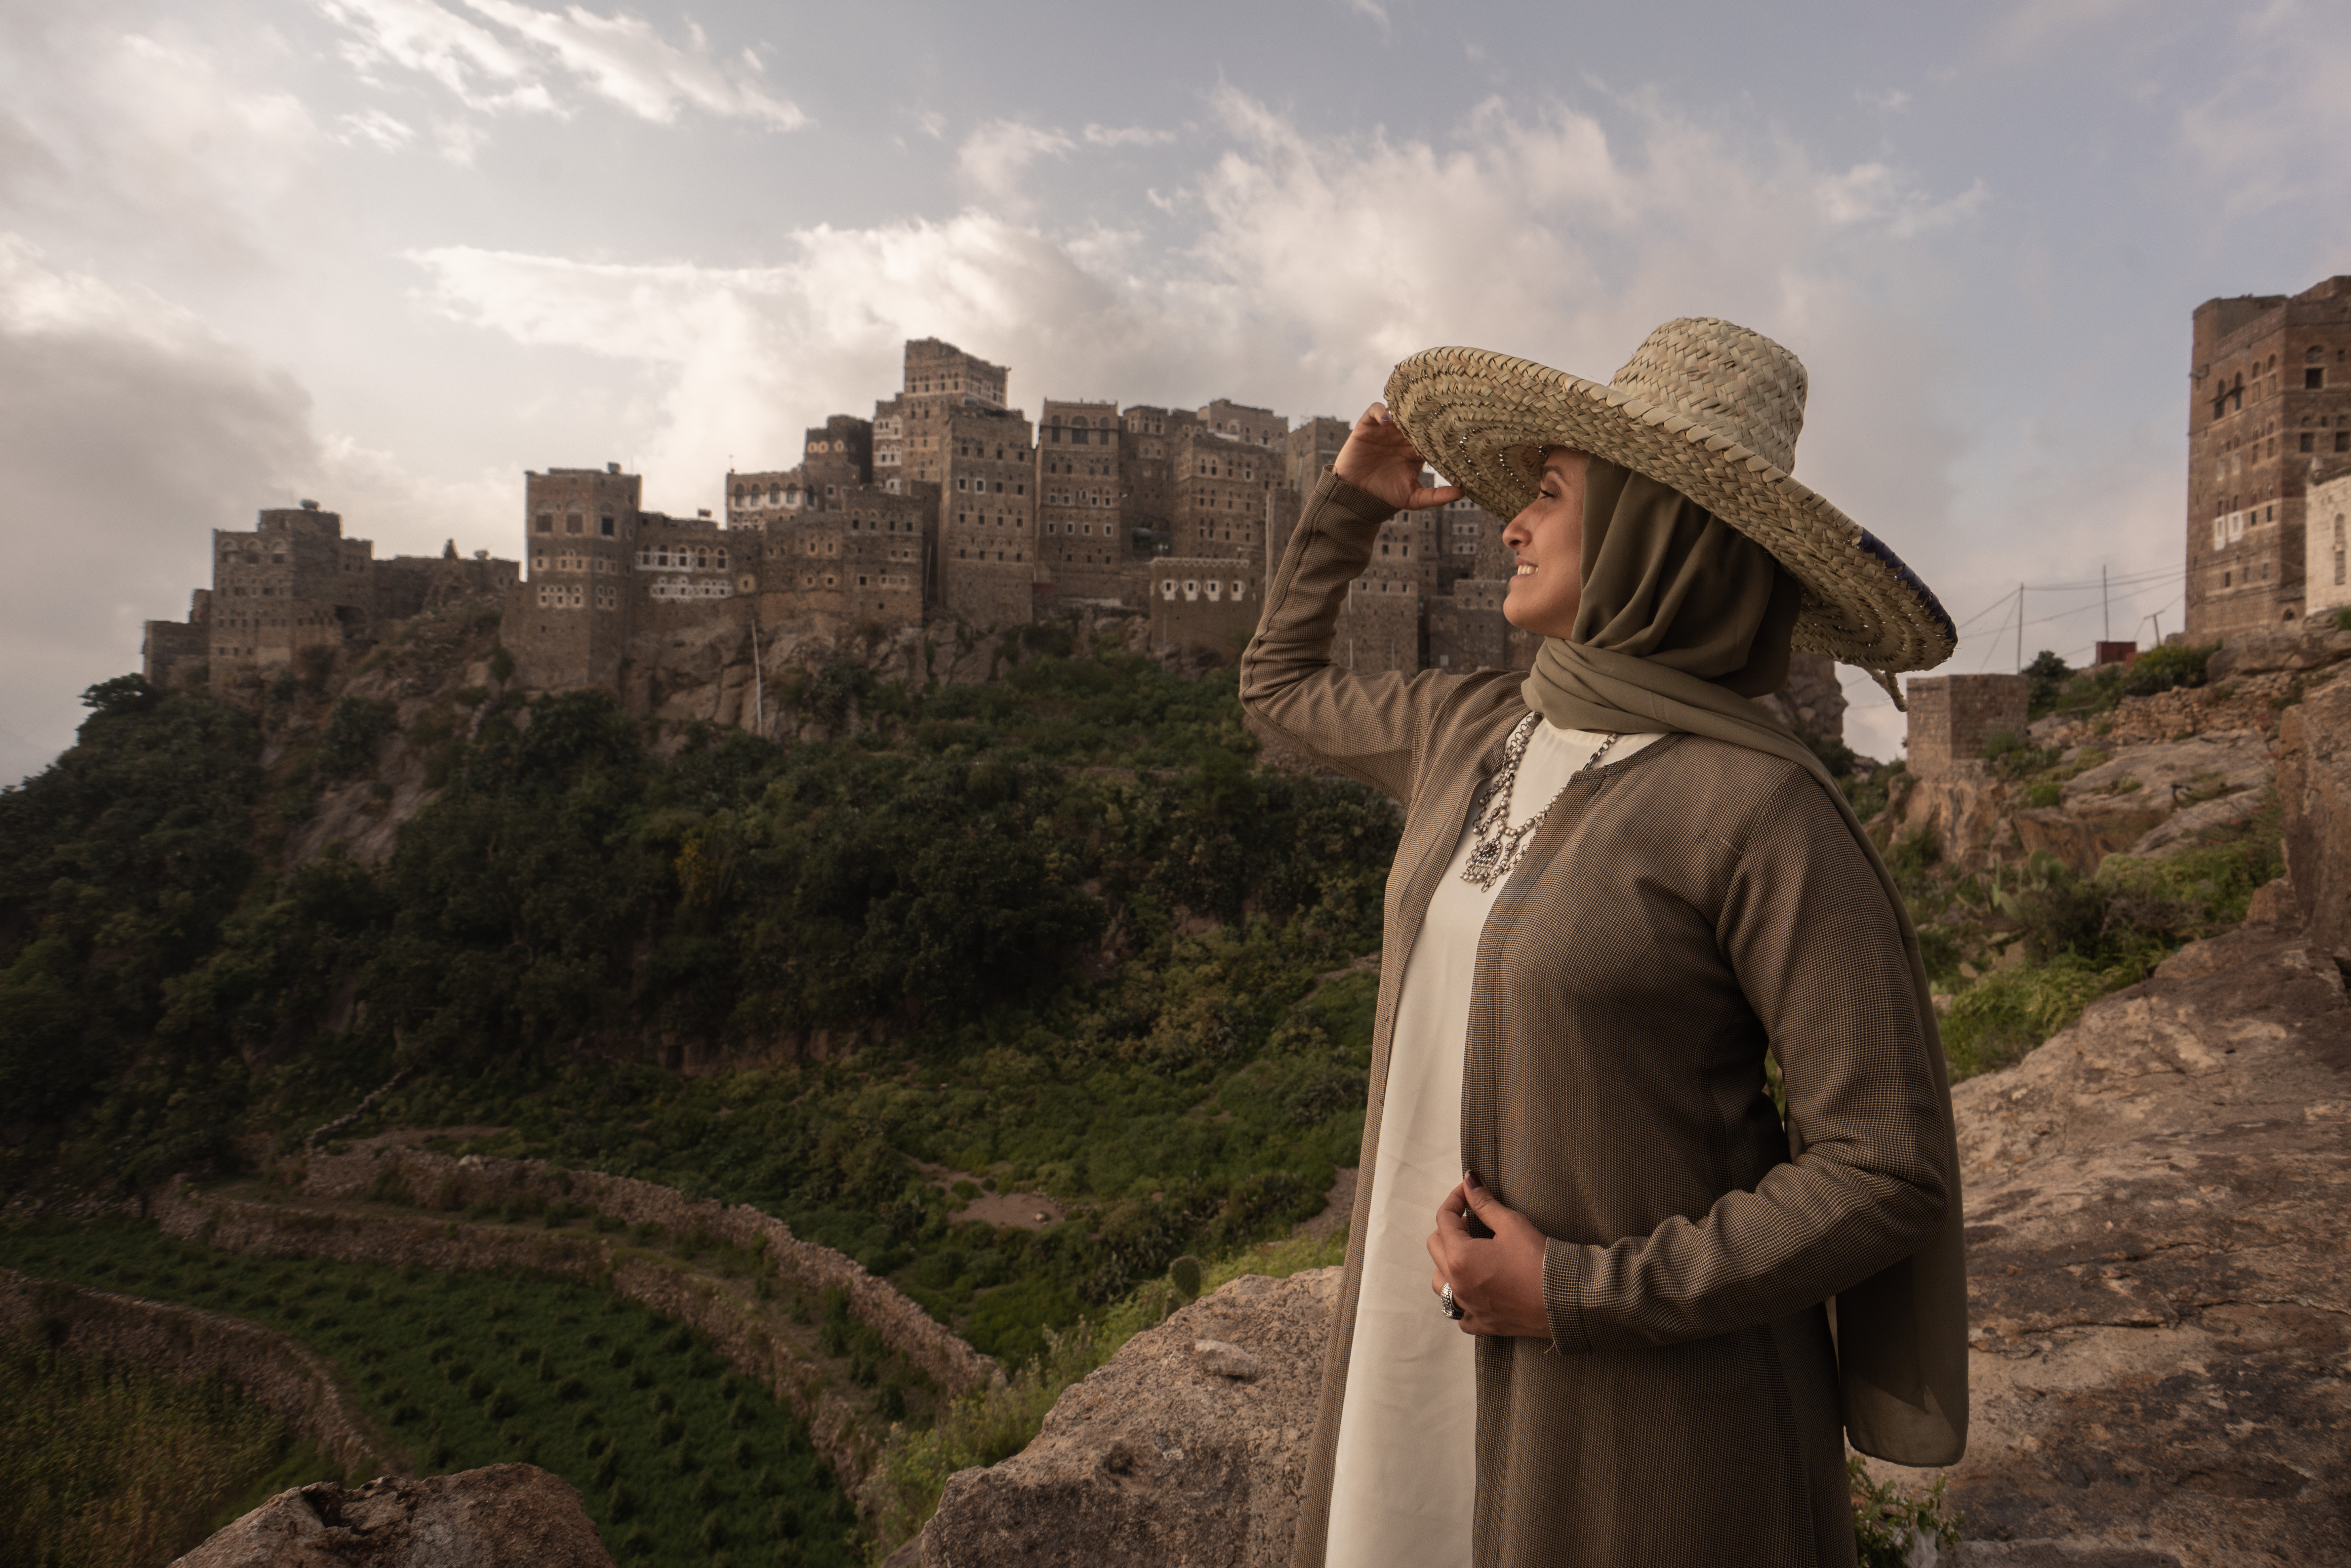 النساء في اليمن بين المكانة التاريخية وقيود الحرب